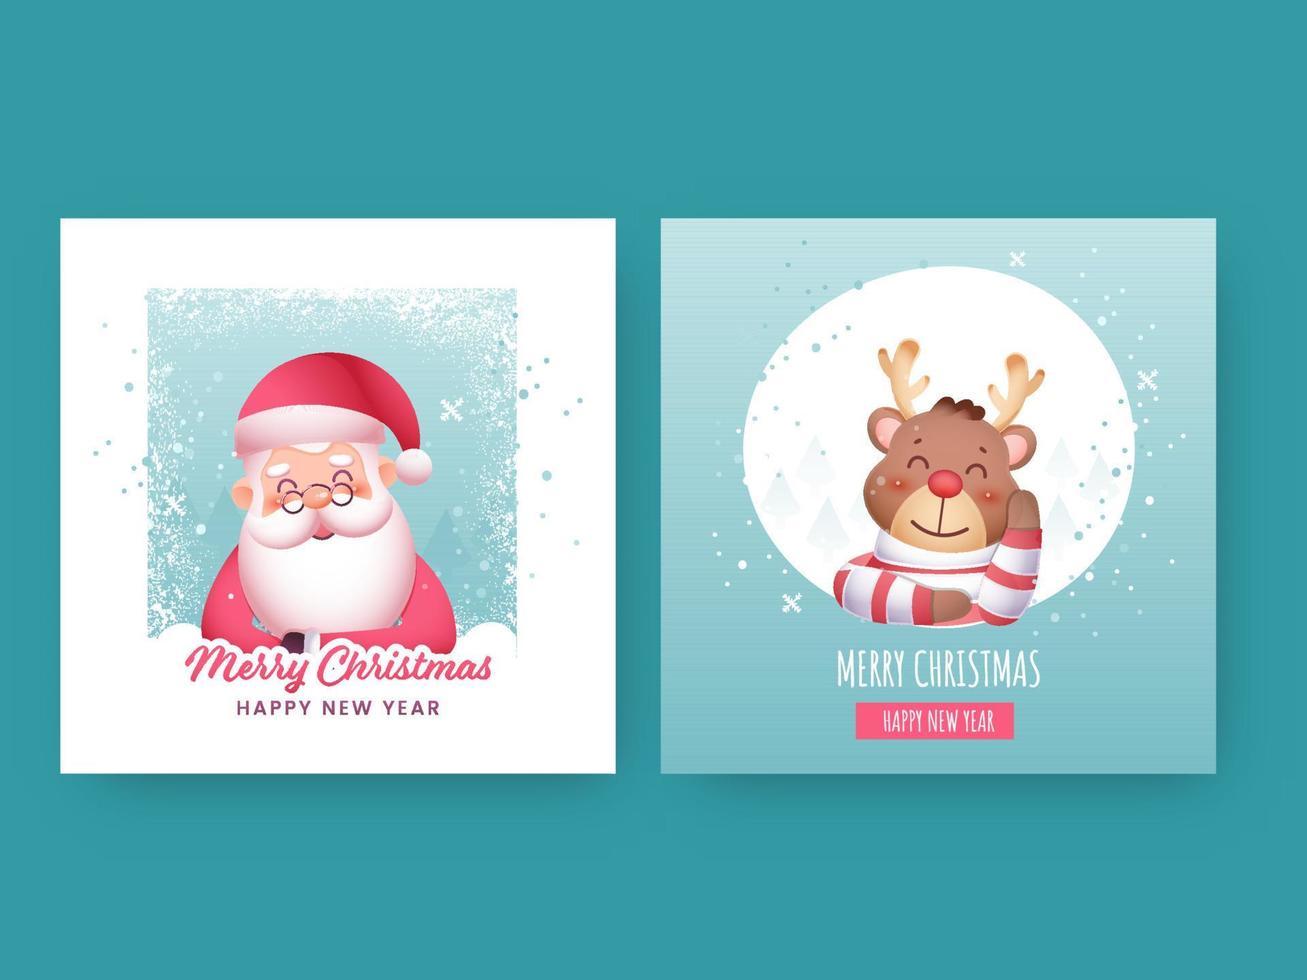 dos color opciones de alegre Navidad contento nuevo año saludo tarjeta con dibujos animados Papa Noel noel, reno personaje. vector